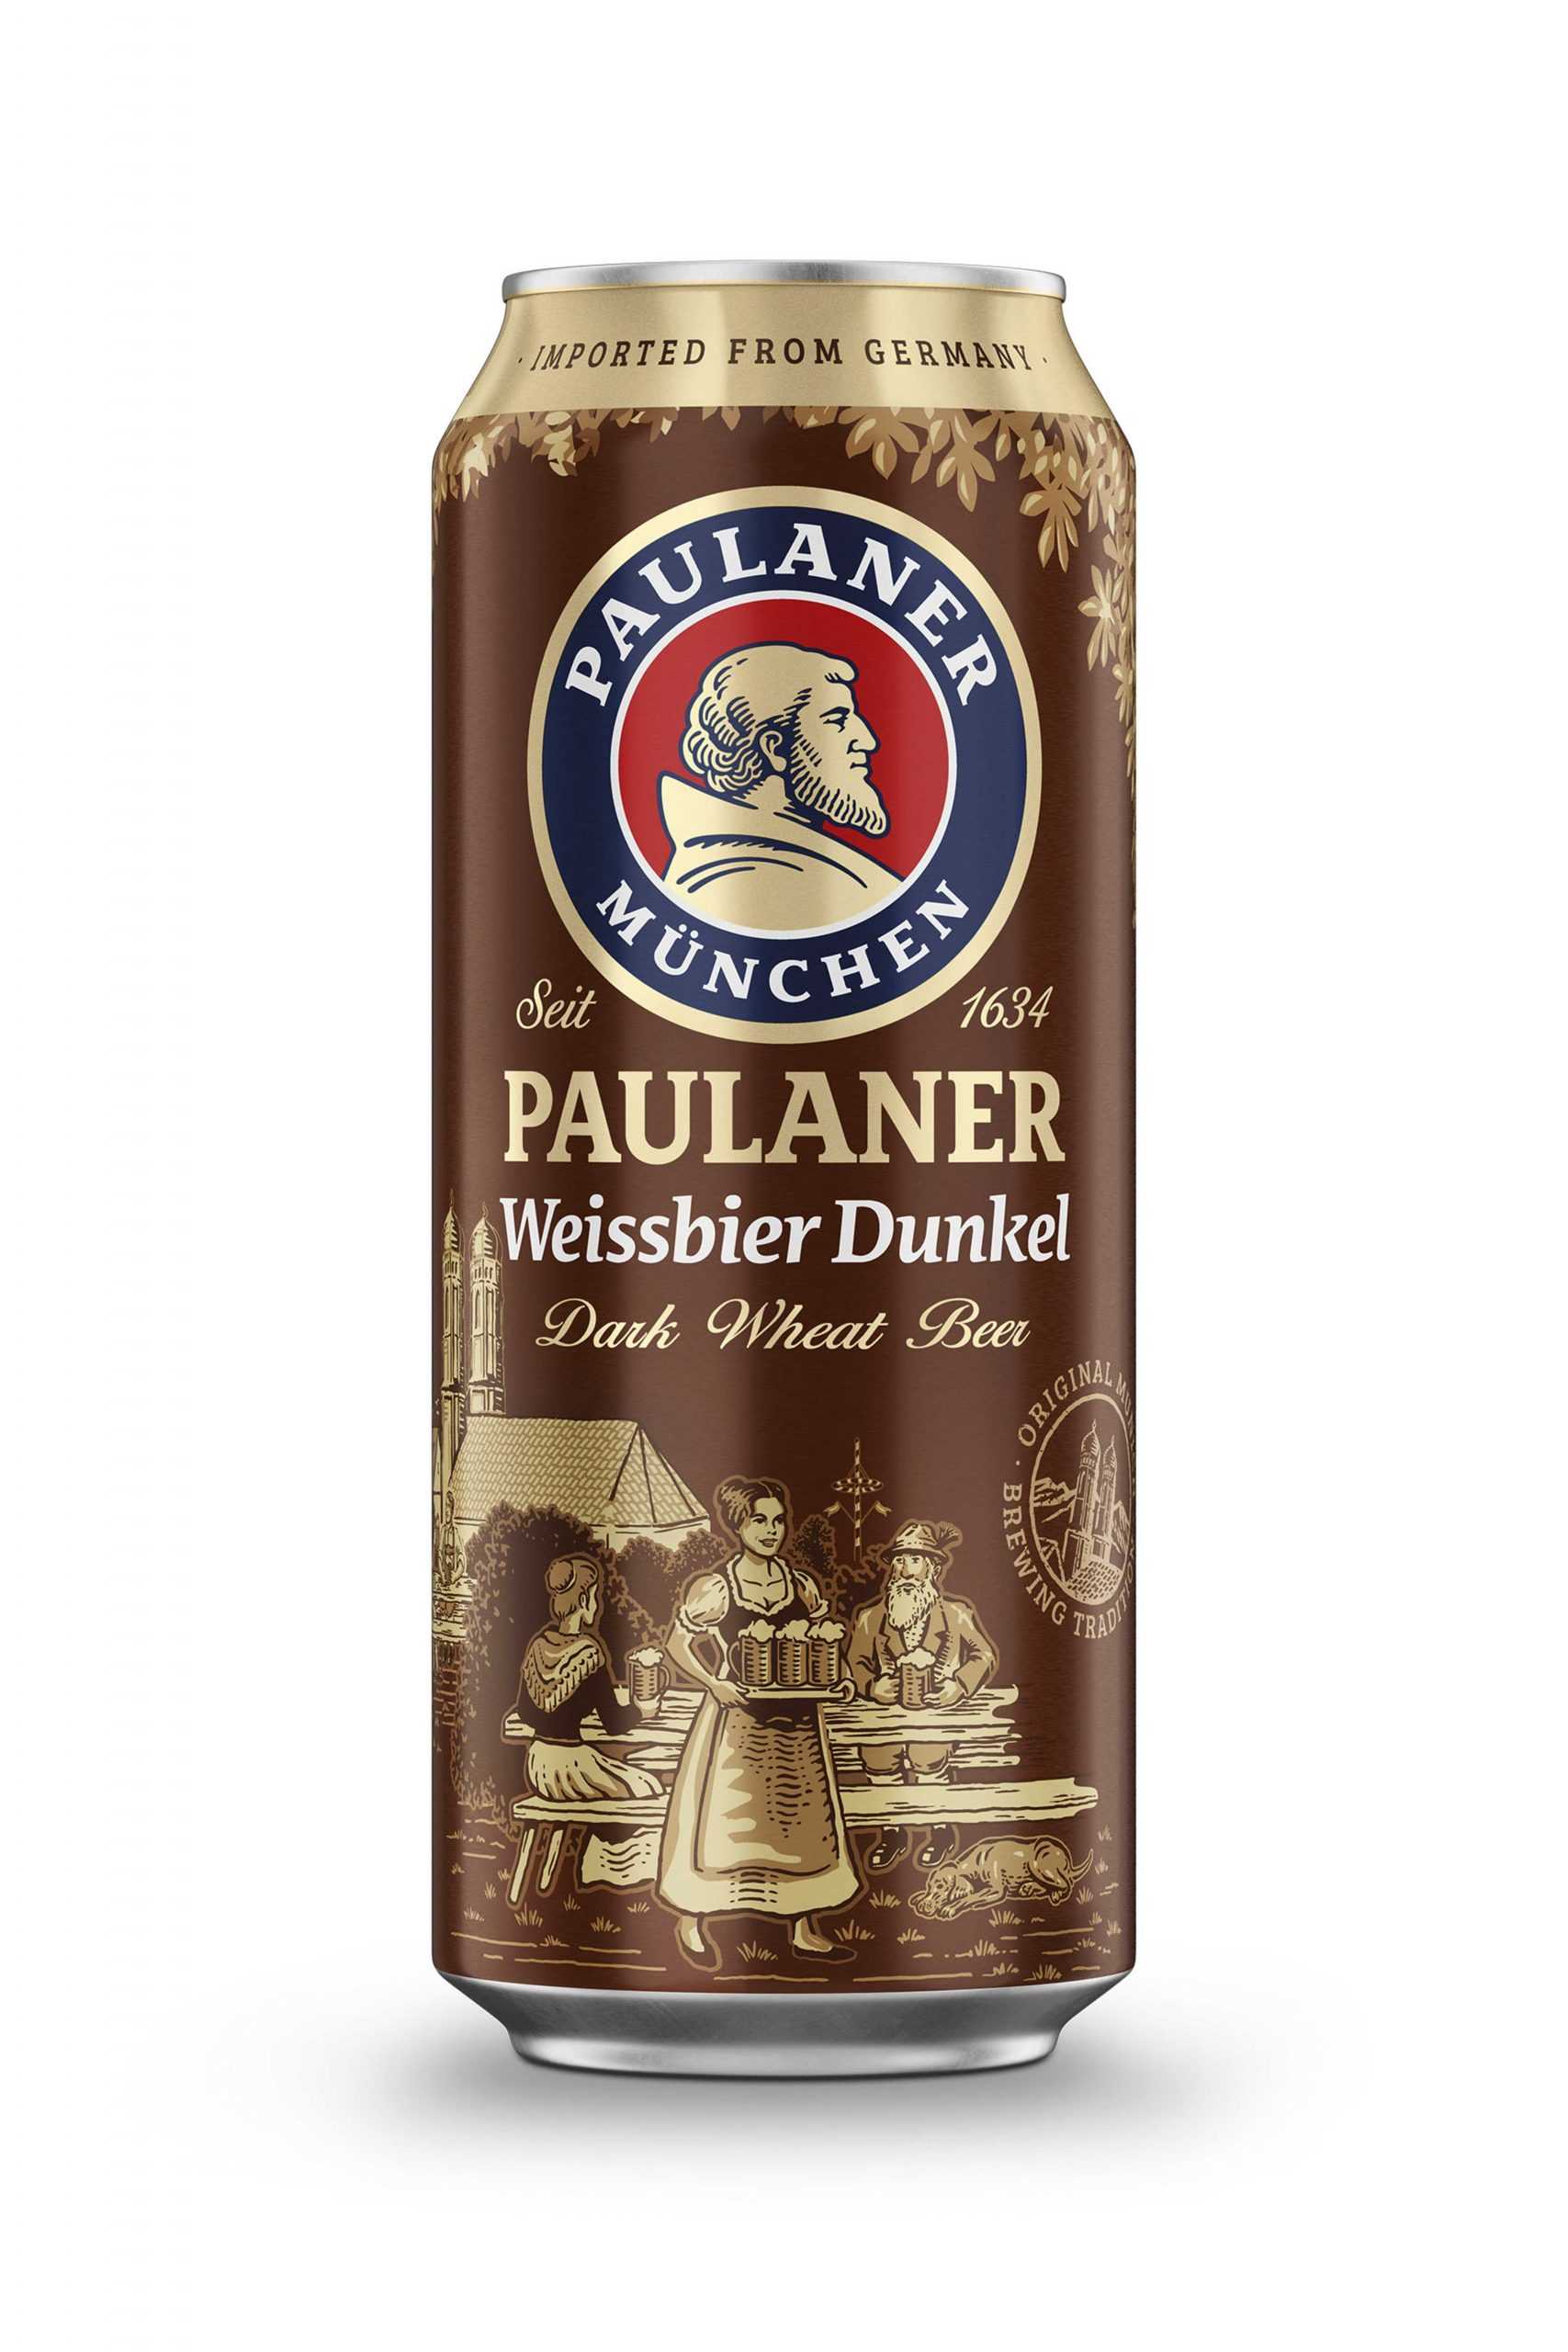 Пиво Паулайнер Хефе Вайсбир Дункель н/ф 5,3% ж/б 0,5 л (Германия)